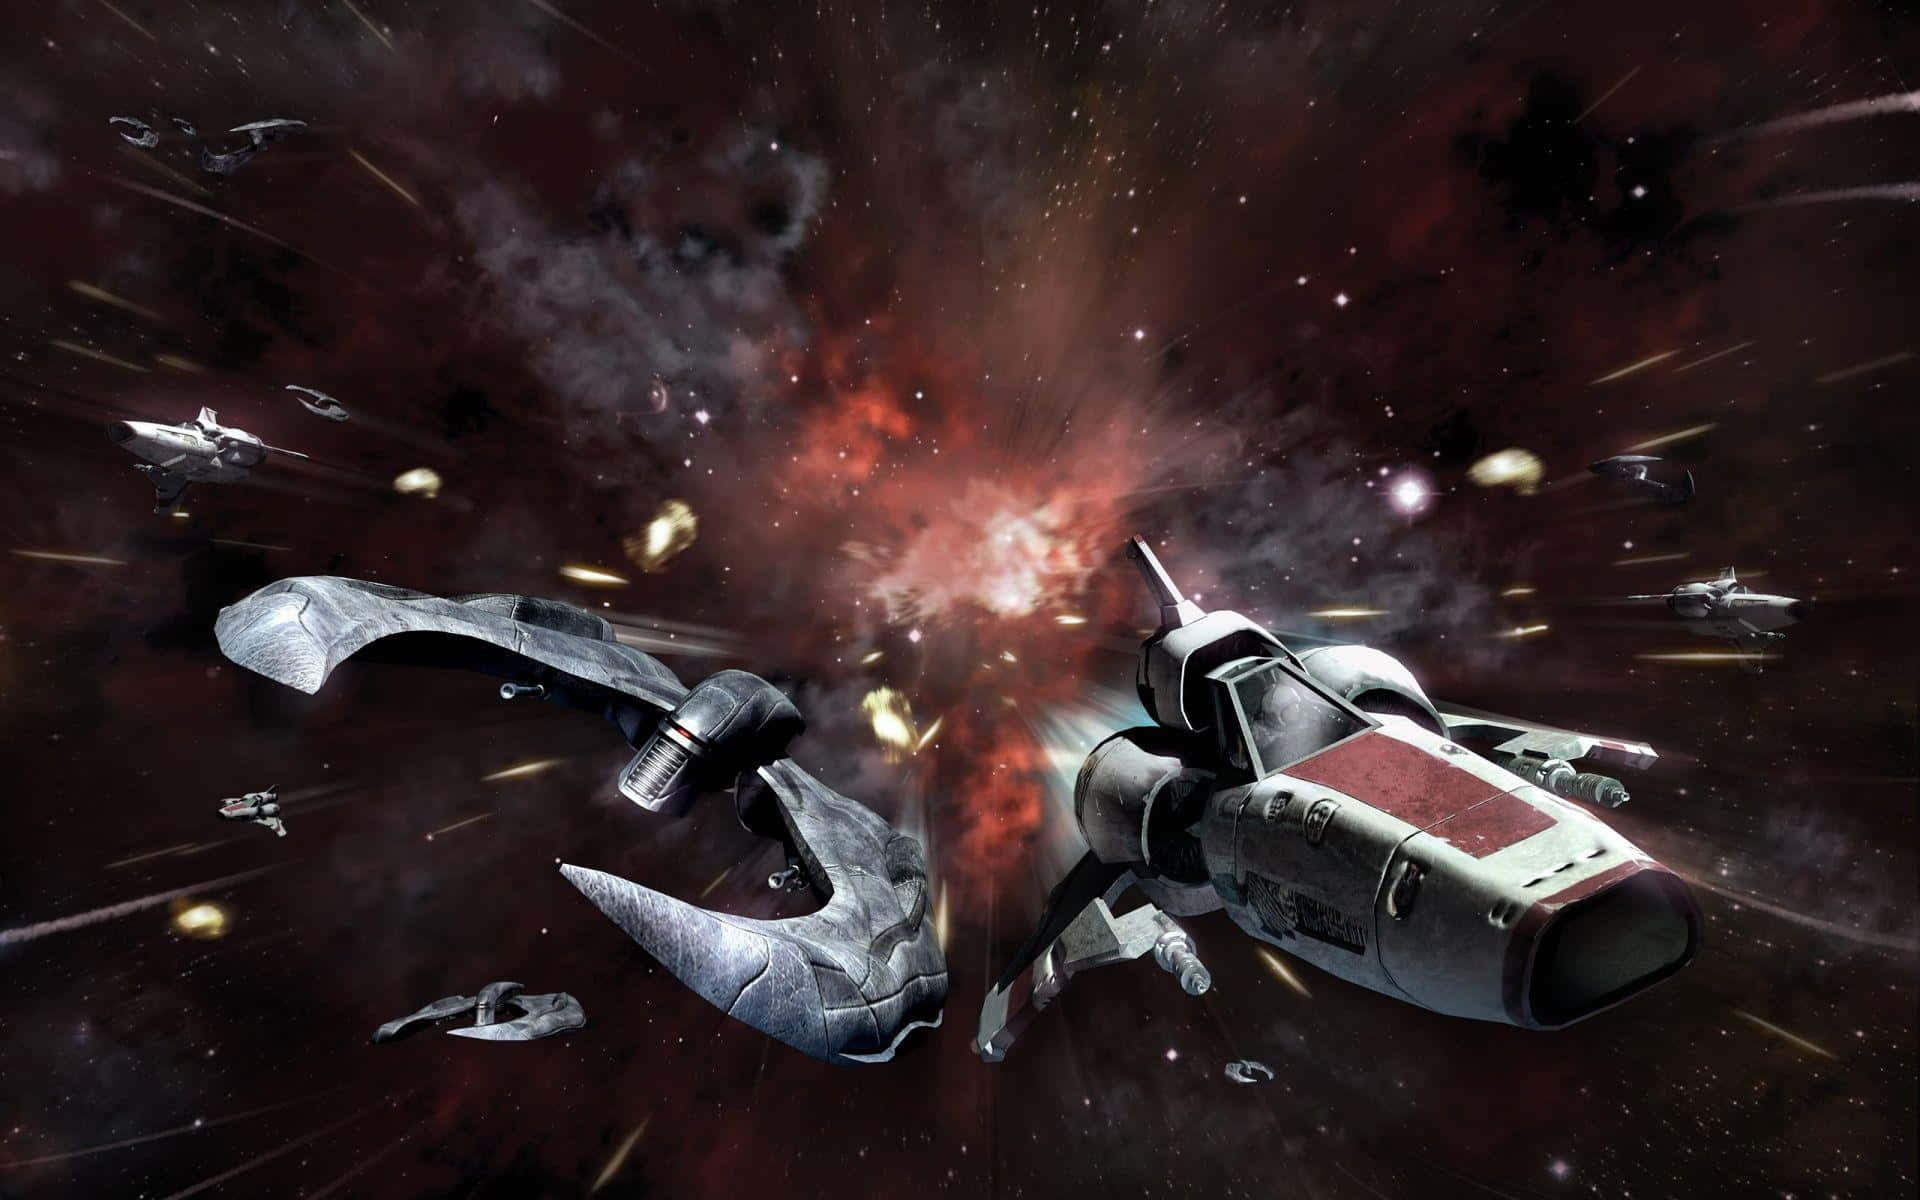 Unabattaglia Spaziale Iconica Dalla Epica Serie Di Fantascienza Battlestar Galactica. Sfondo